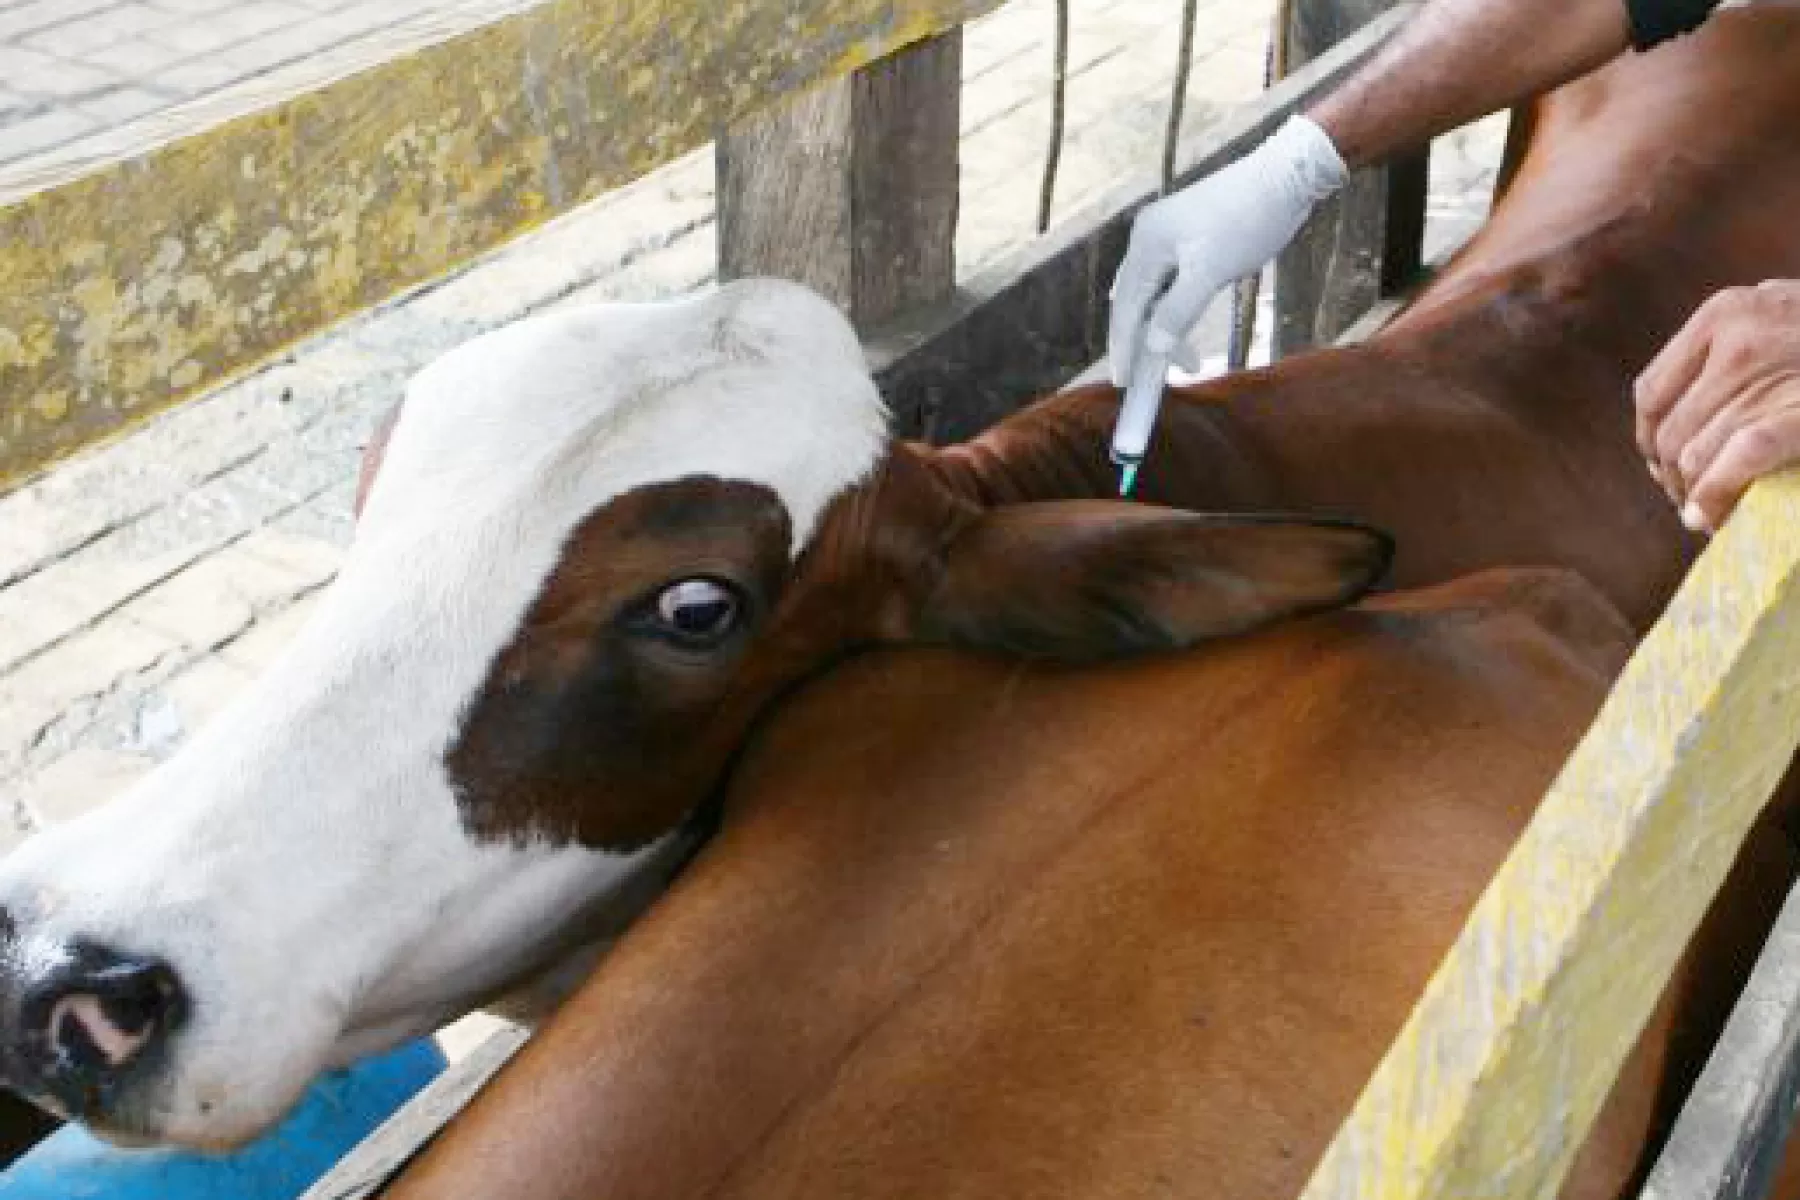 Ganaderos venezolanos pueden acceder a las vacunas contra la fiebre aftosa y brucelosis bovina en zona fronteriza de Colombia.